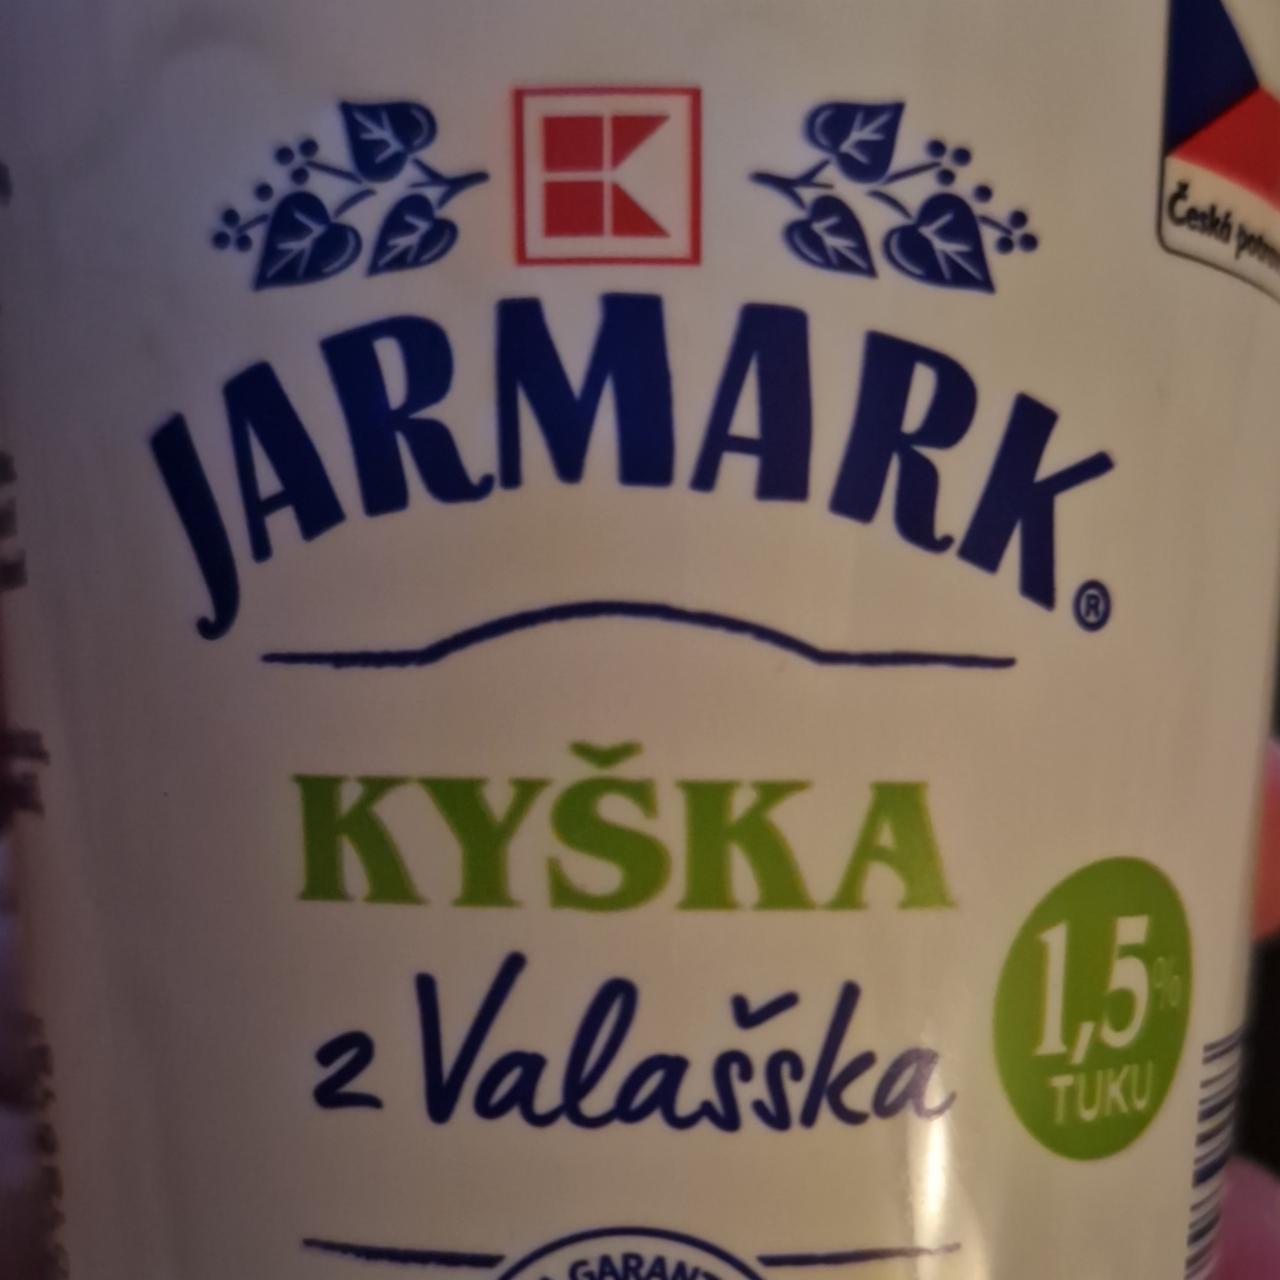 Fotografie - Kyška z Valašska 1,5% K-Jarmark